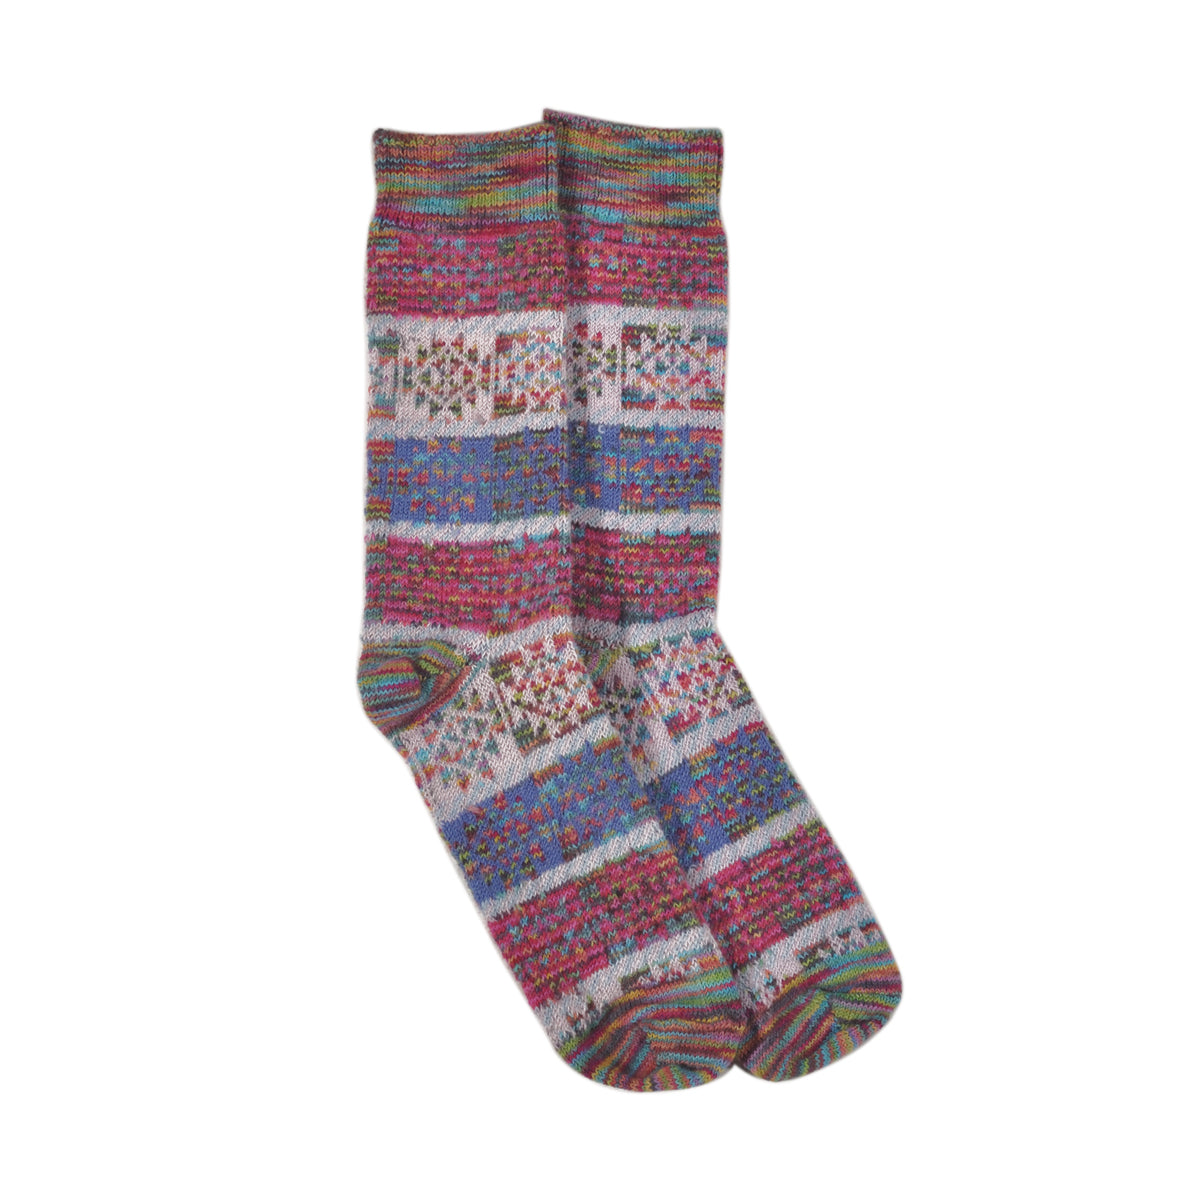 ラナート (LANART) 米国製ベビーアルパカソックス靴下 Artistic Baby Alpaca Socks[SANTAFE/CANDY]